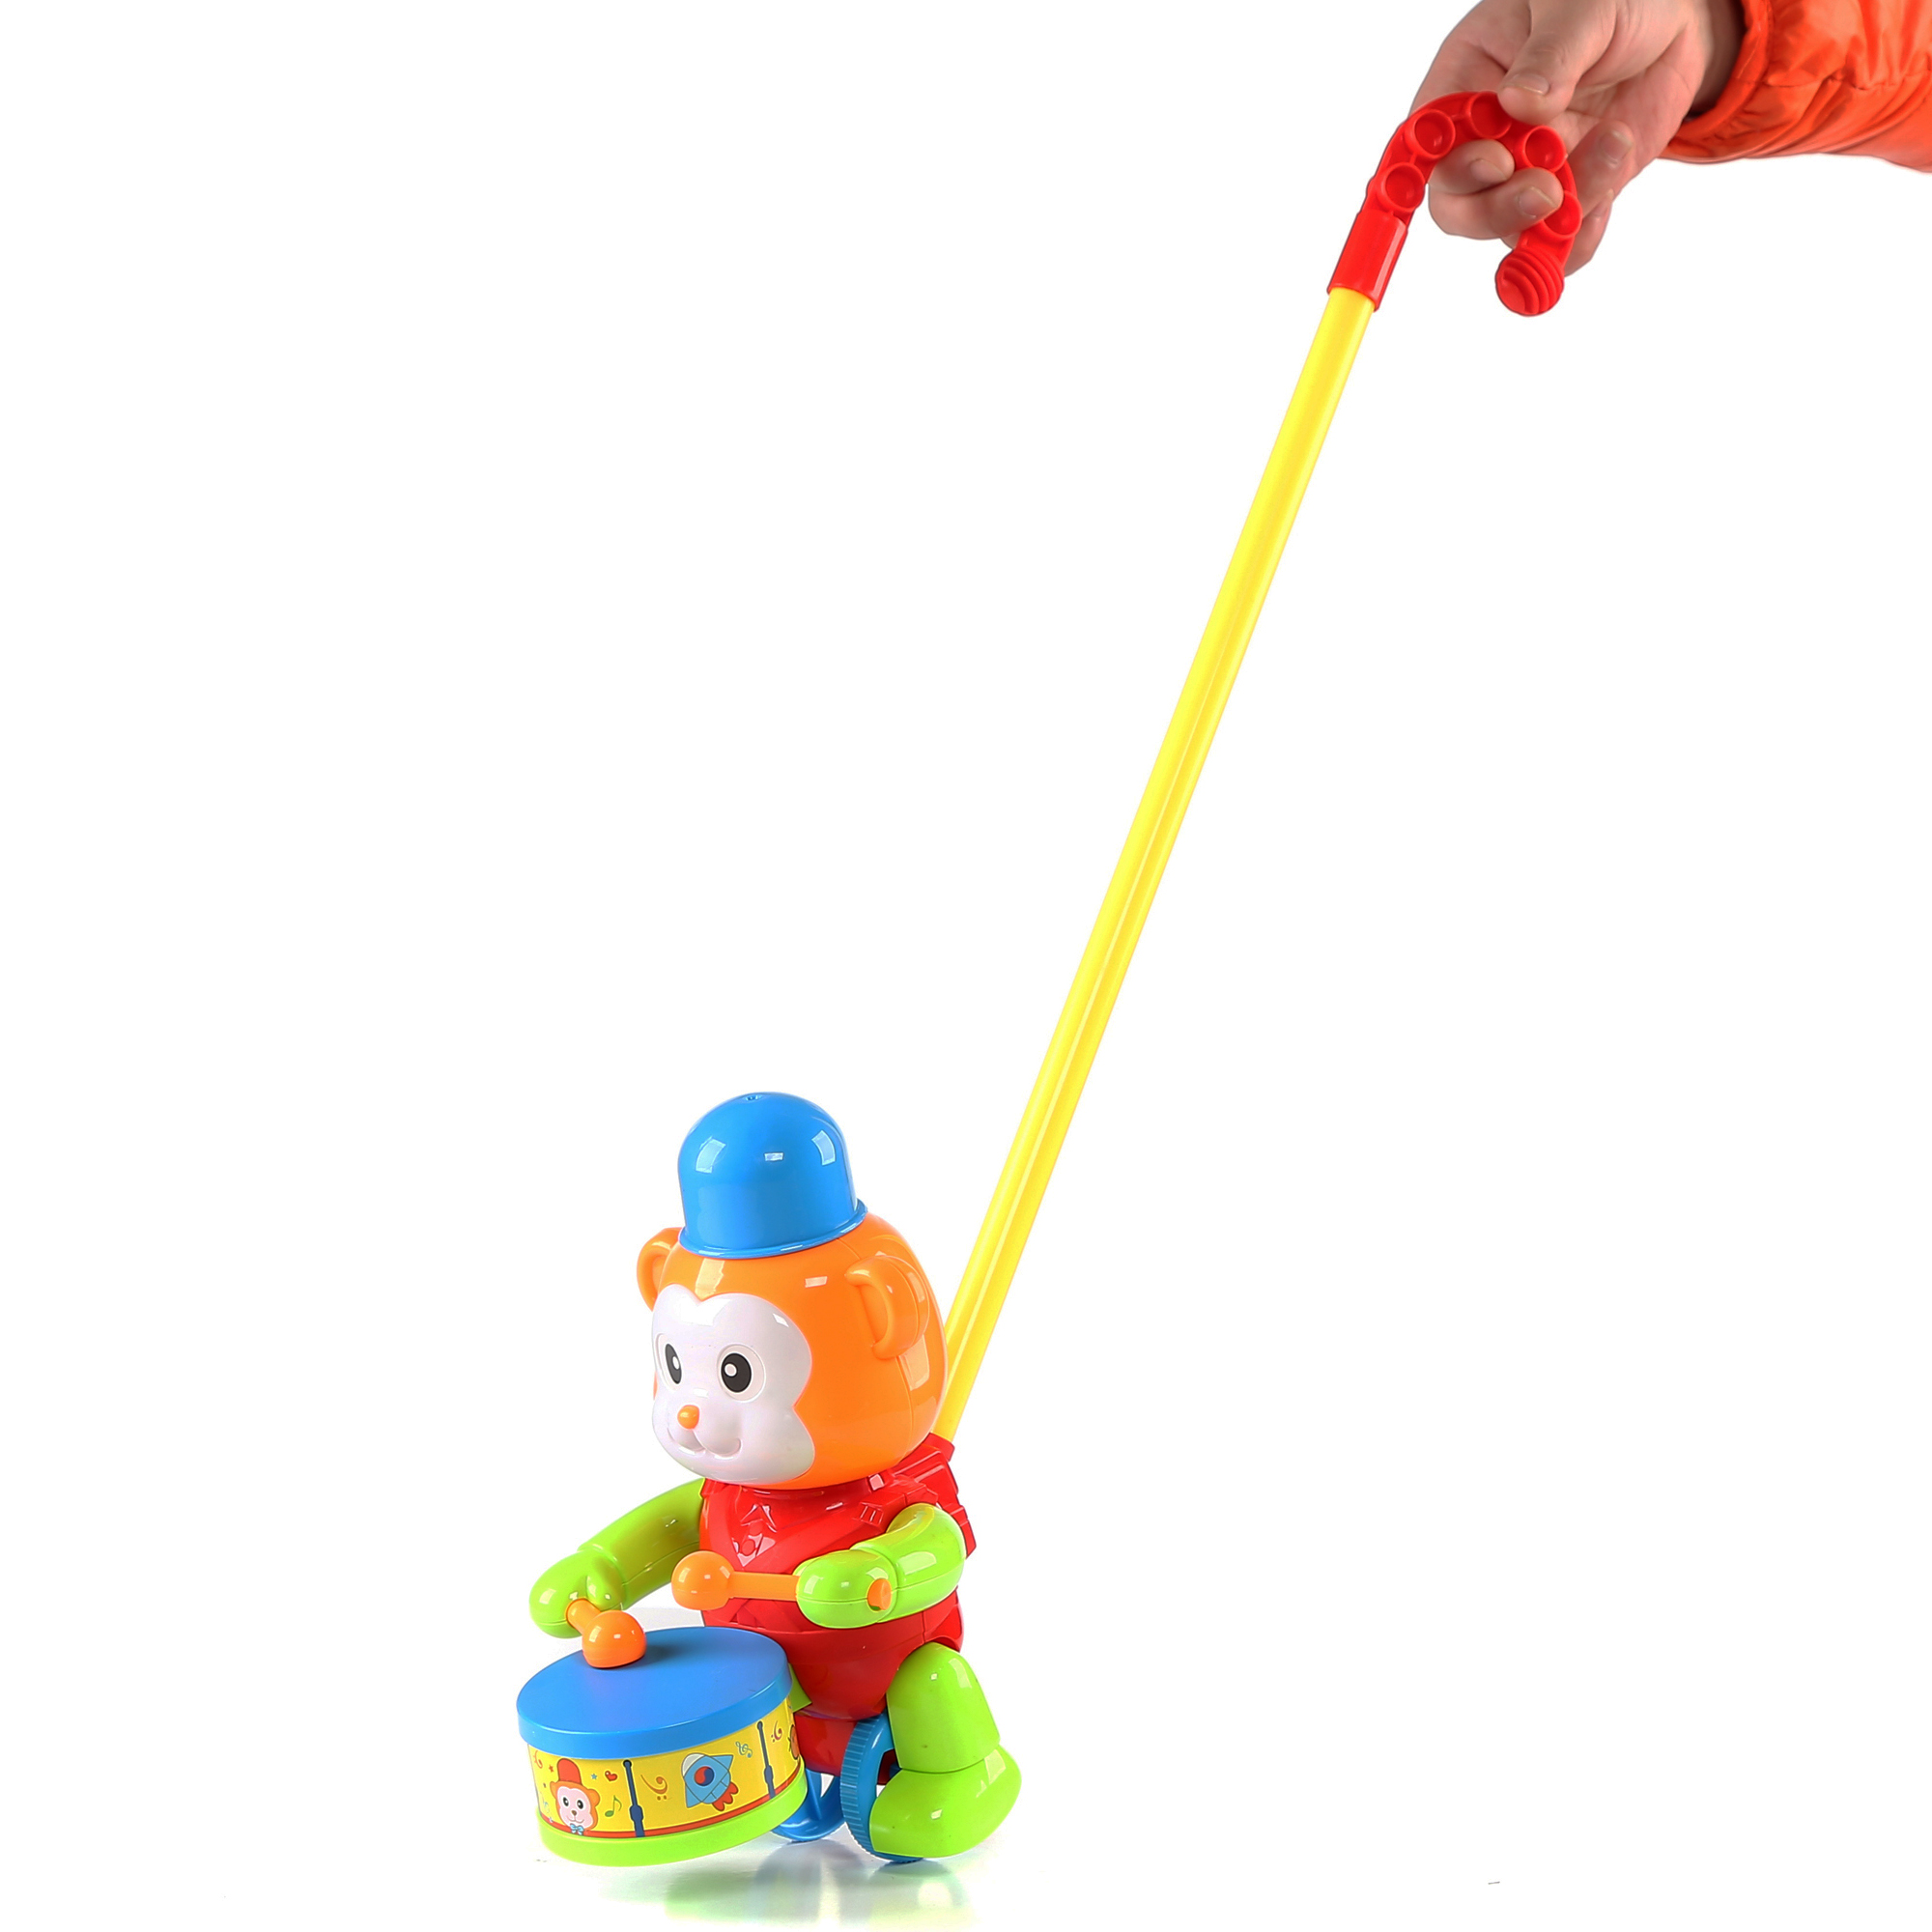 Monkey Push Toy